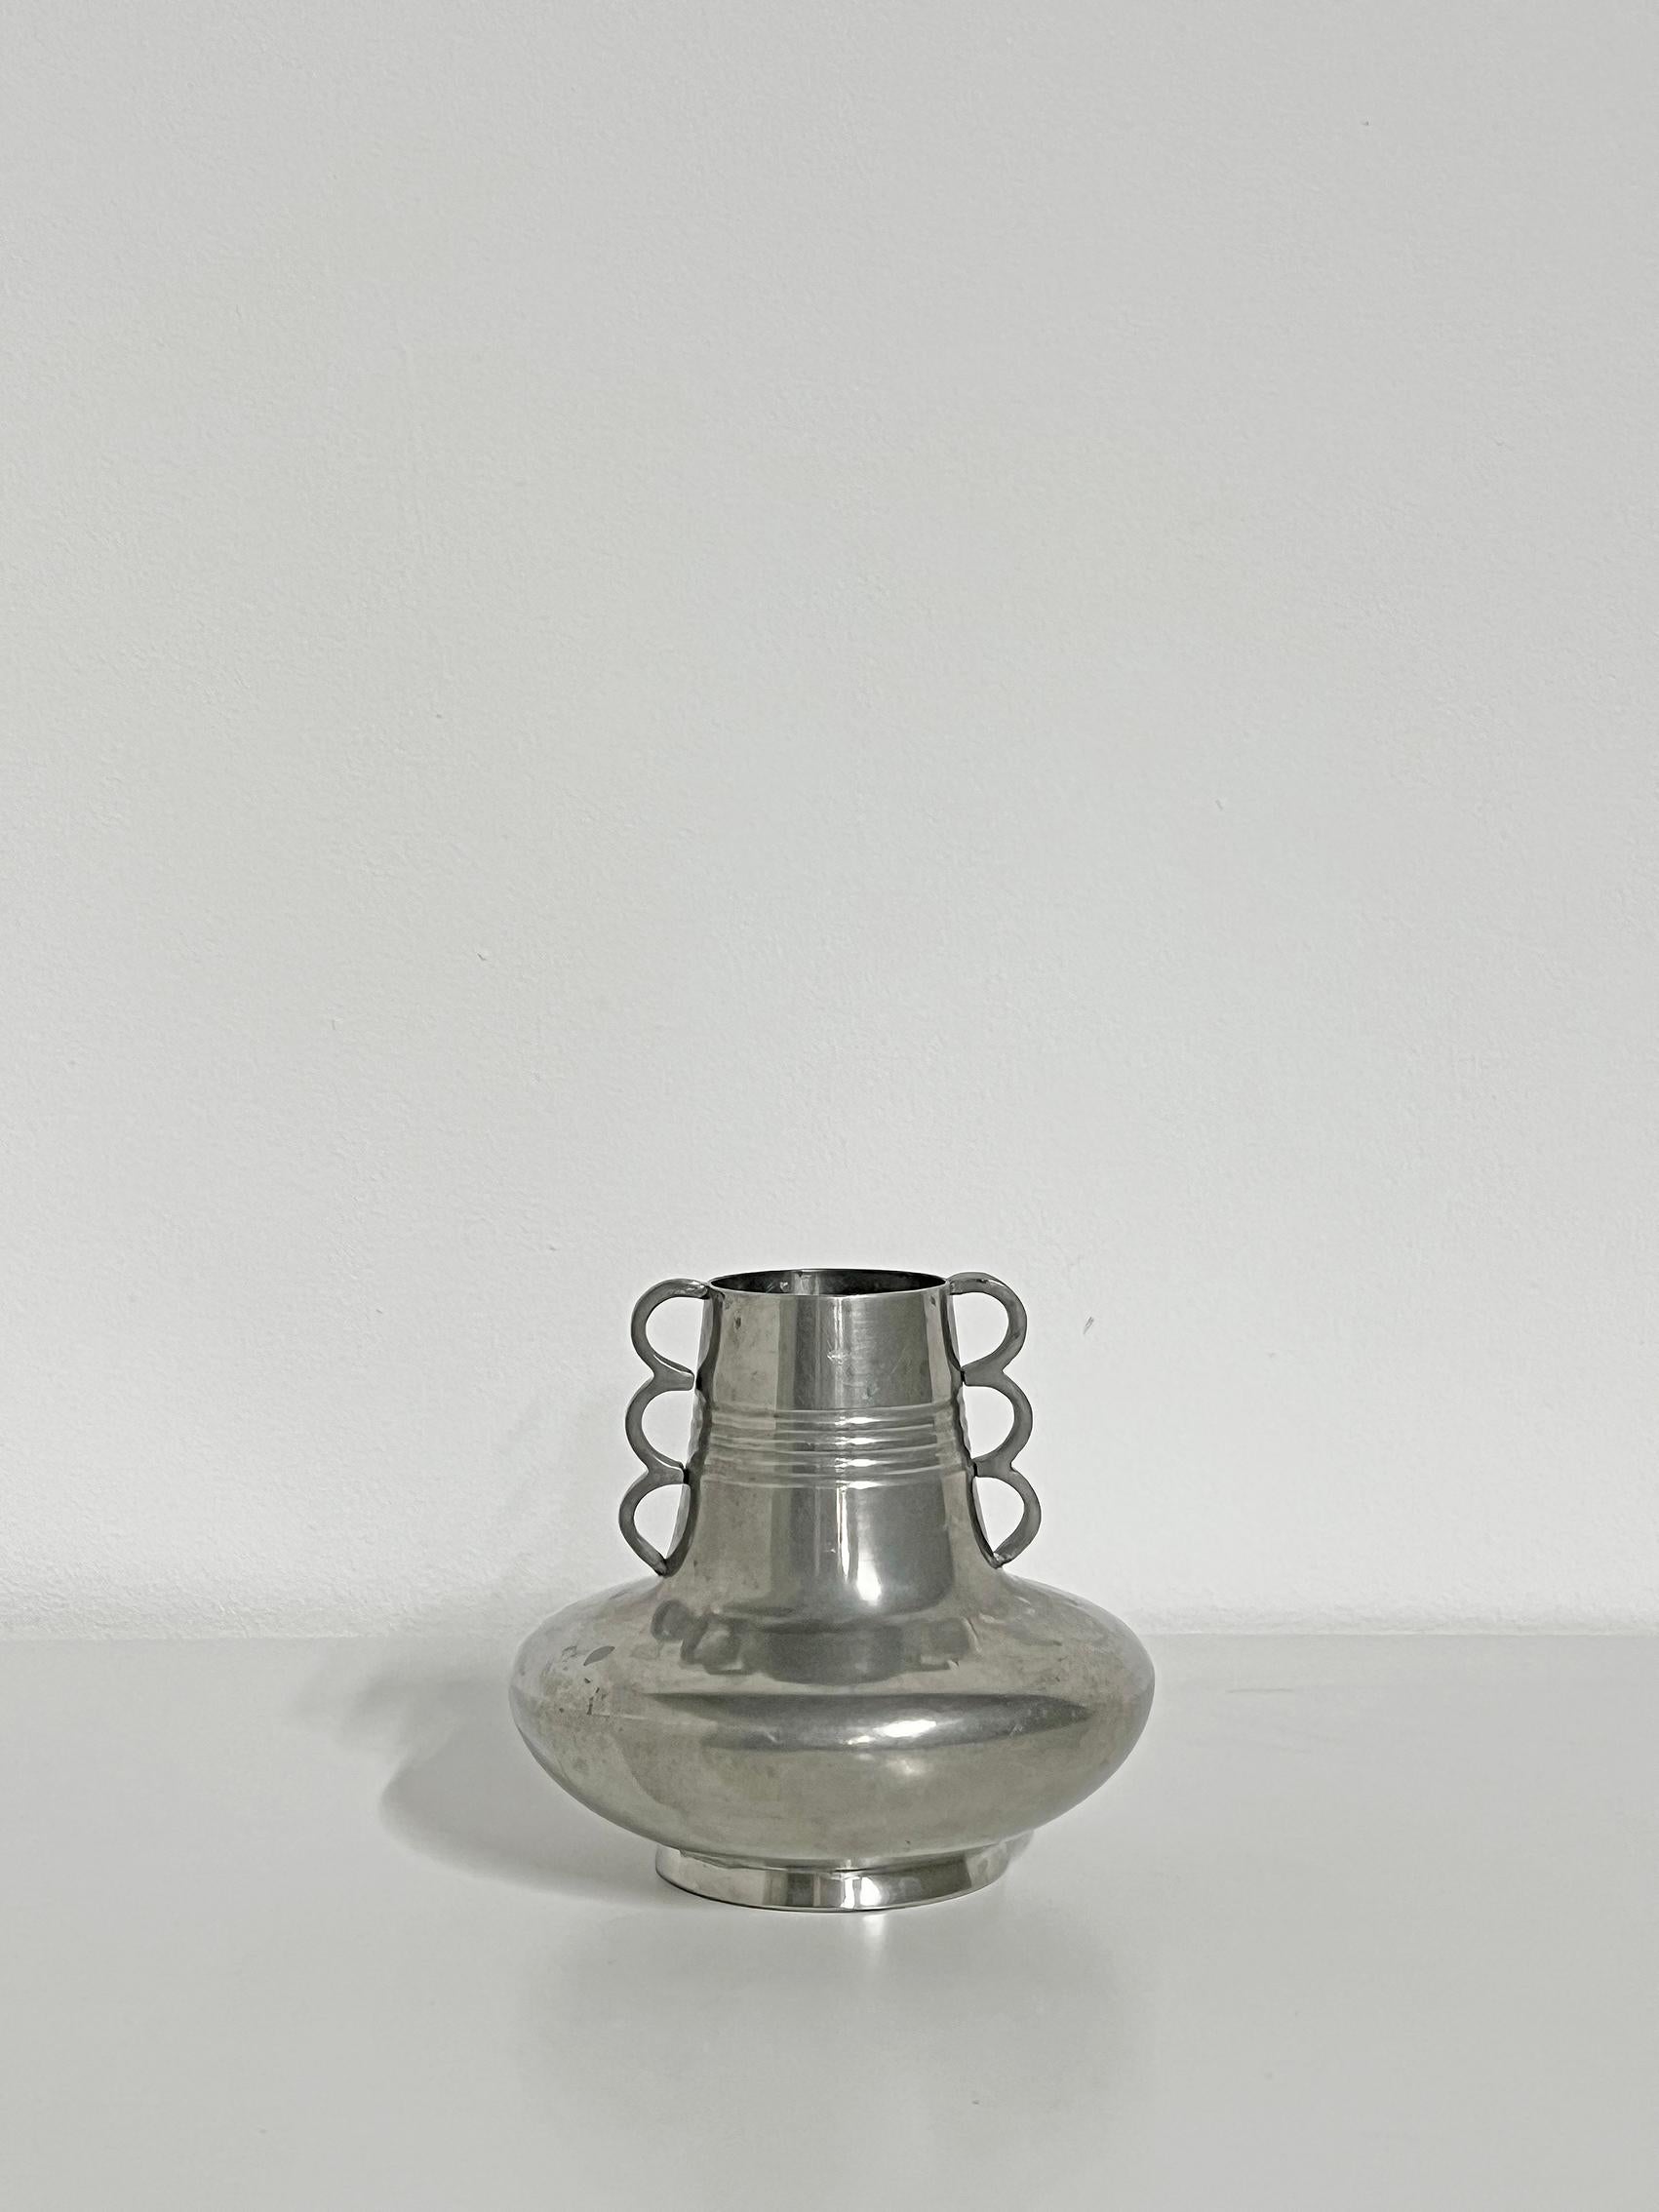 Kühle Vase aus Zinn von ADS, wahrscheinlich aus den 1930-40er Jahren. 
Abnutzung und Patina im Einklang mit Alter und Gebrauch. Kratzer, Schrammen, Flecken und eine Delle. 
Signiert mit Herstellerzeichen.